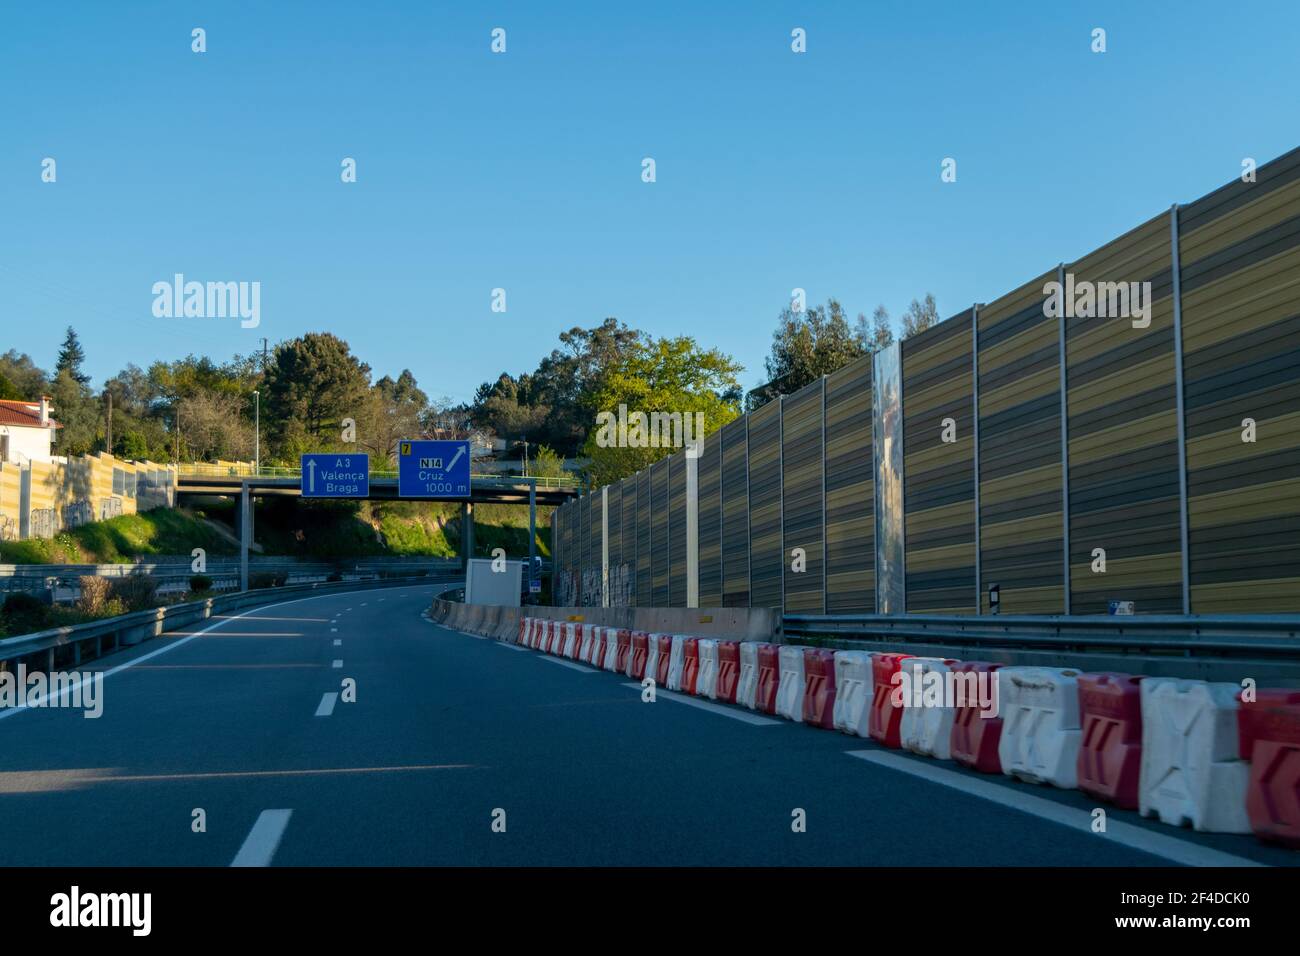 Guida o guida in autostrada o in autostrada. Autostrade portoghesi da Brisa Auto-estradas de Portugal. Barriere di protezione sulle autostrade. Foto Stock